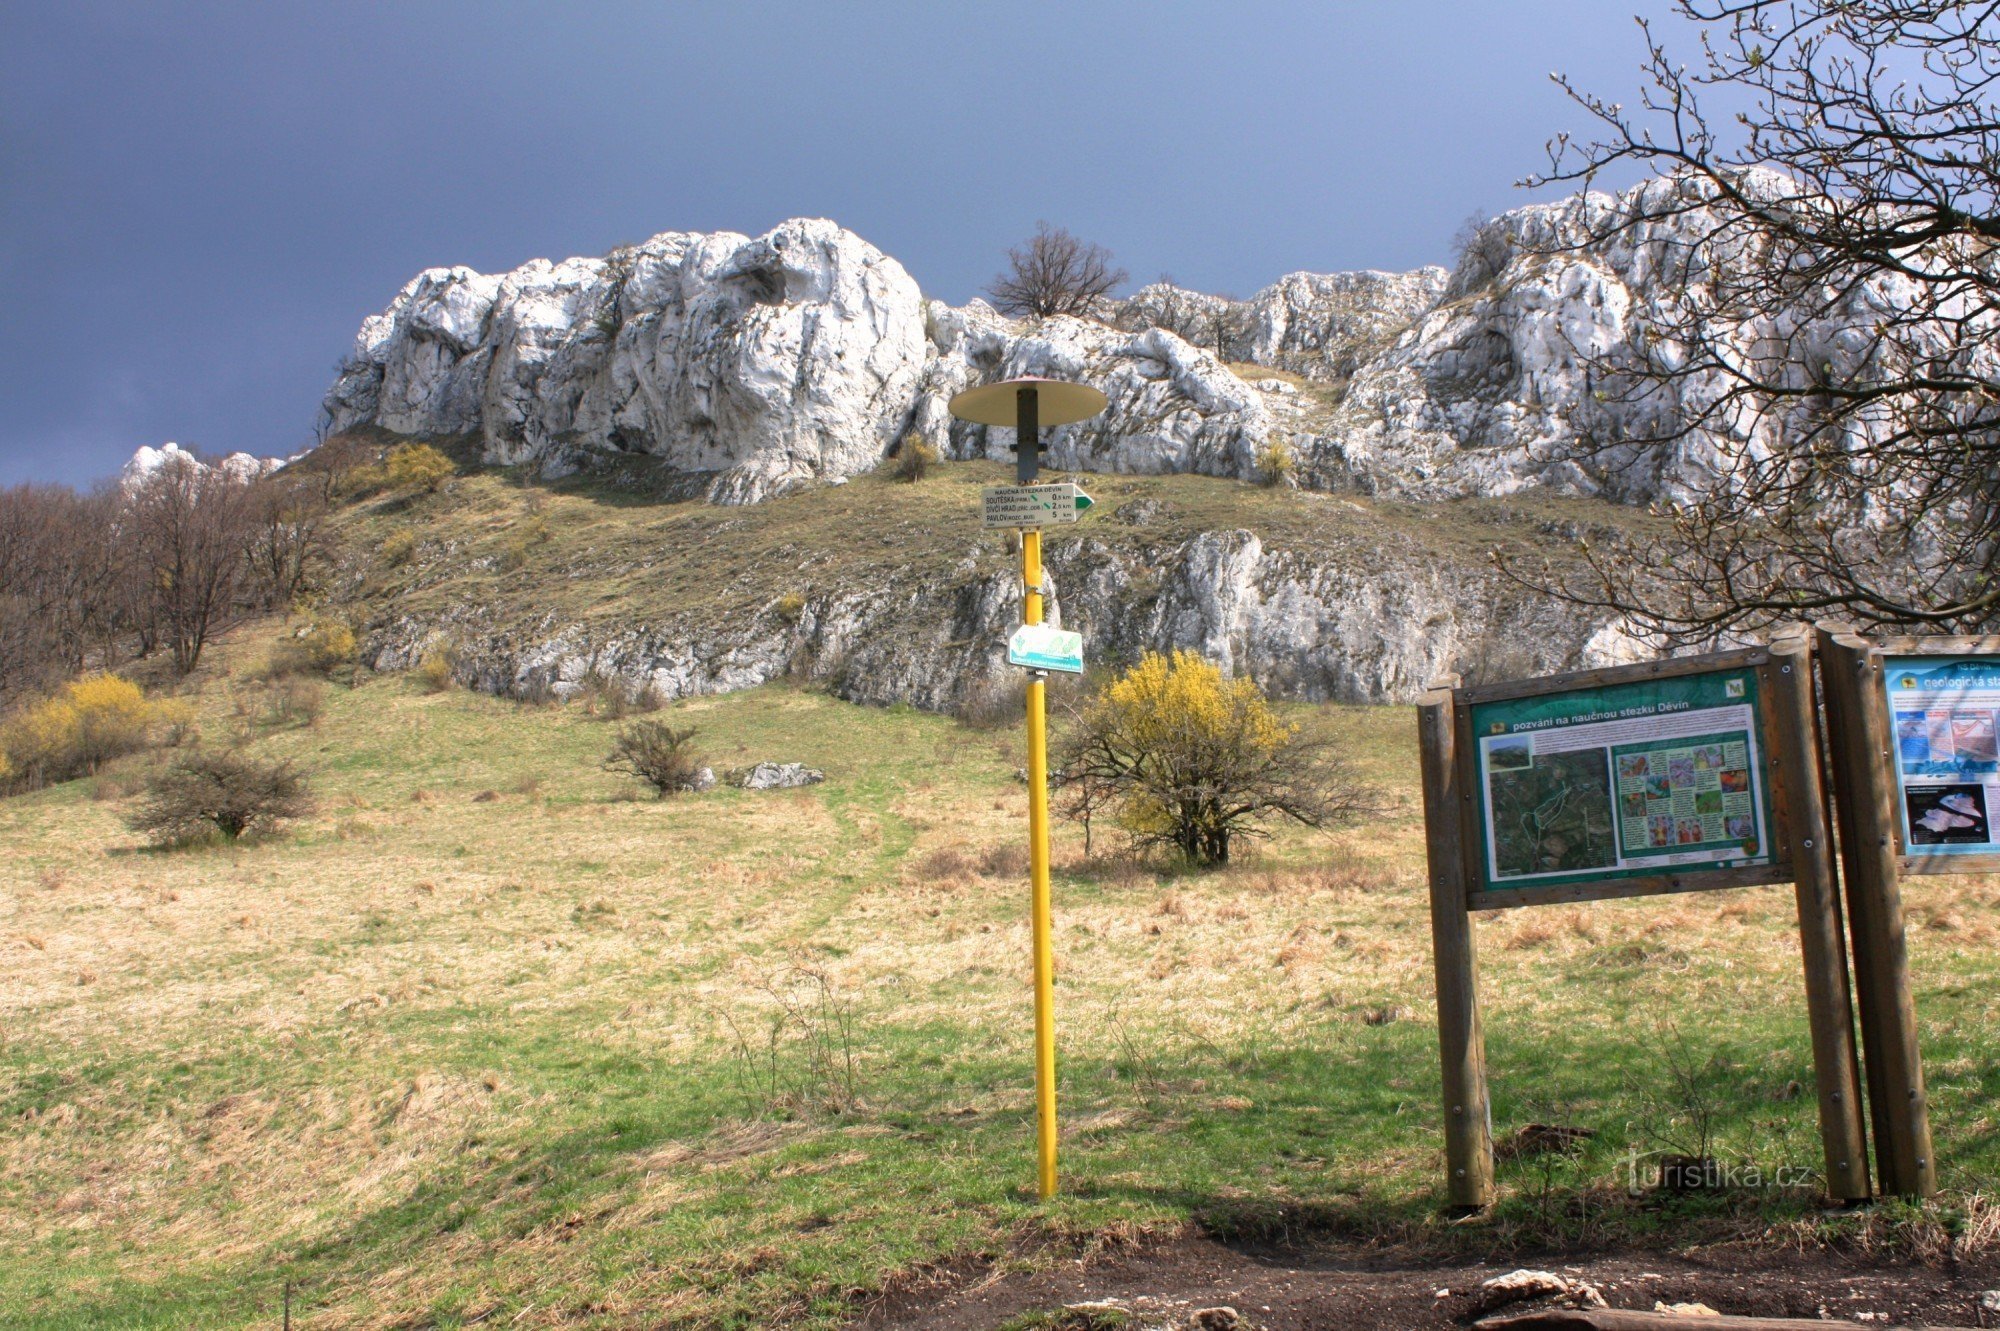 The upper part of the Soutěska tourist crossroads